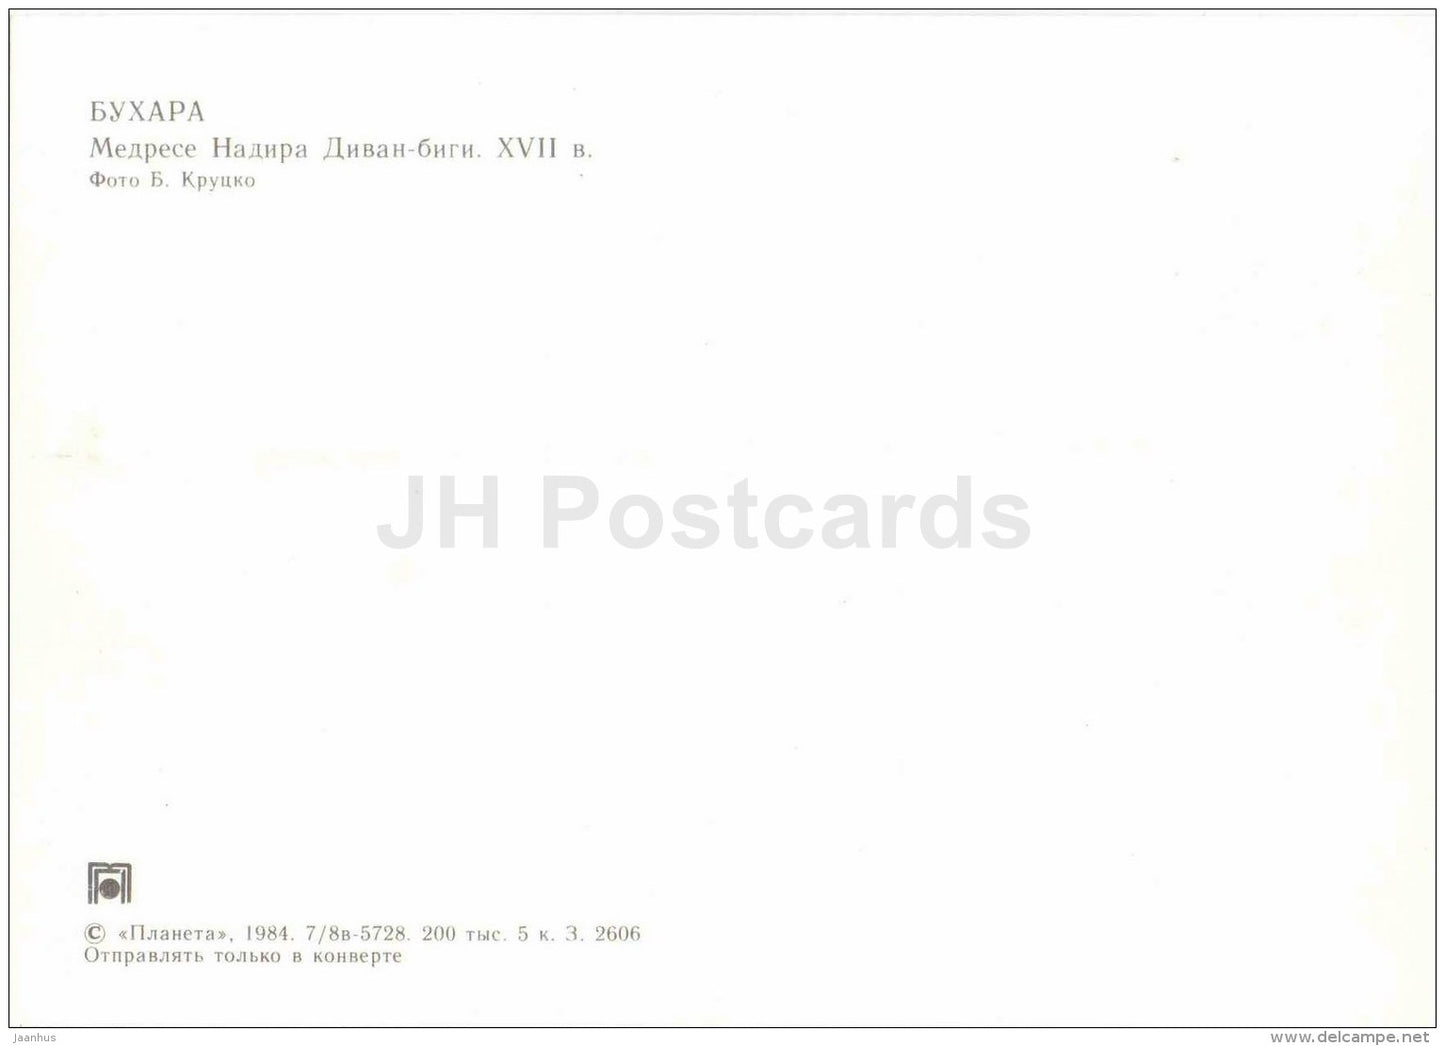 Madrasse of Nadira-Divan-bigi - Bukhara - 1984 - Uzbekistan USSR - unused - JH Postcards